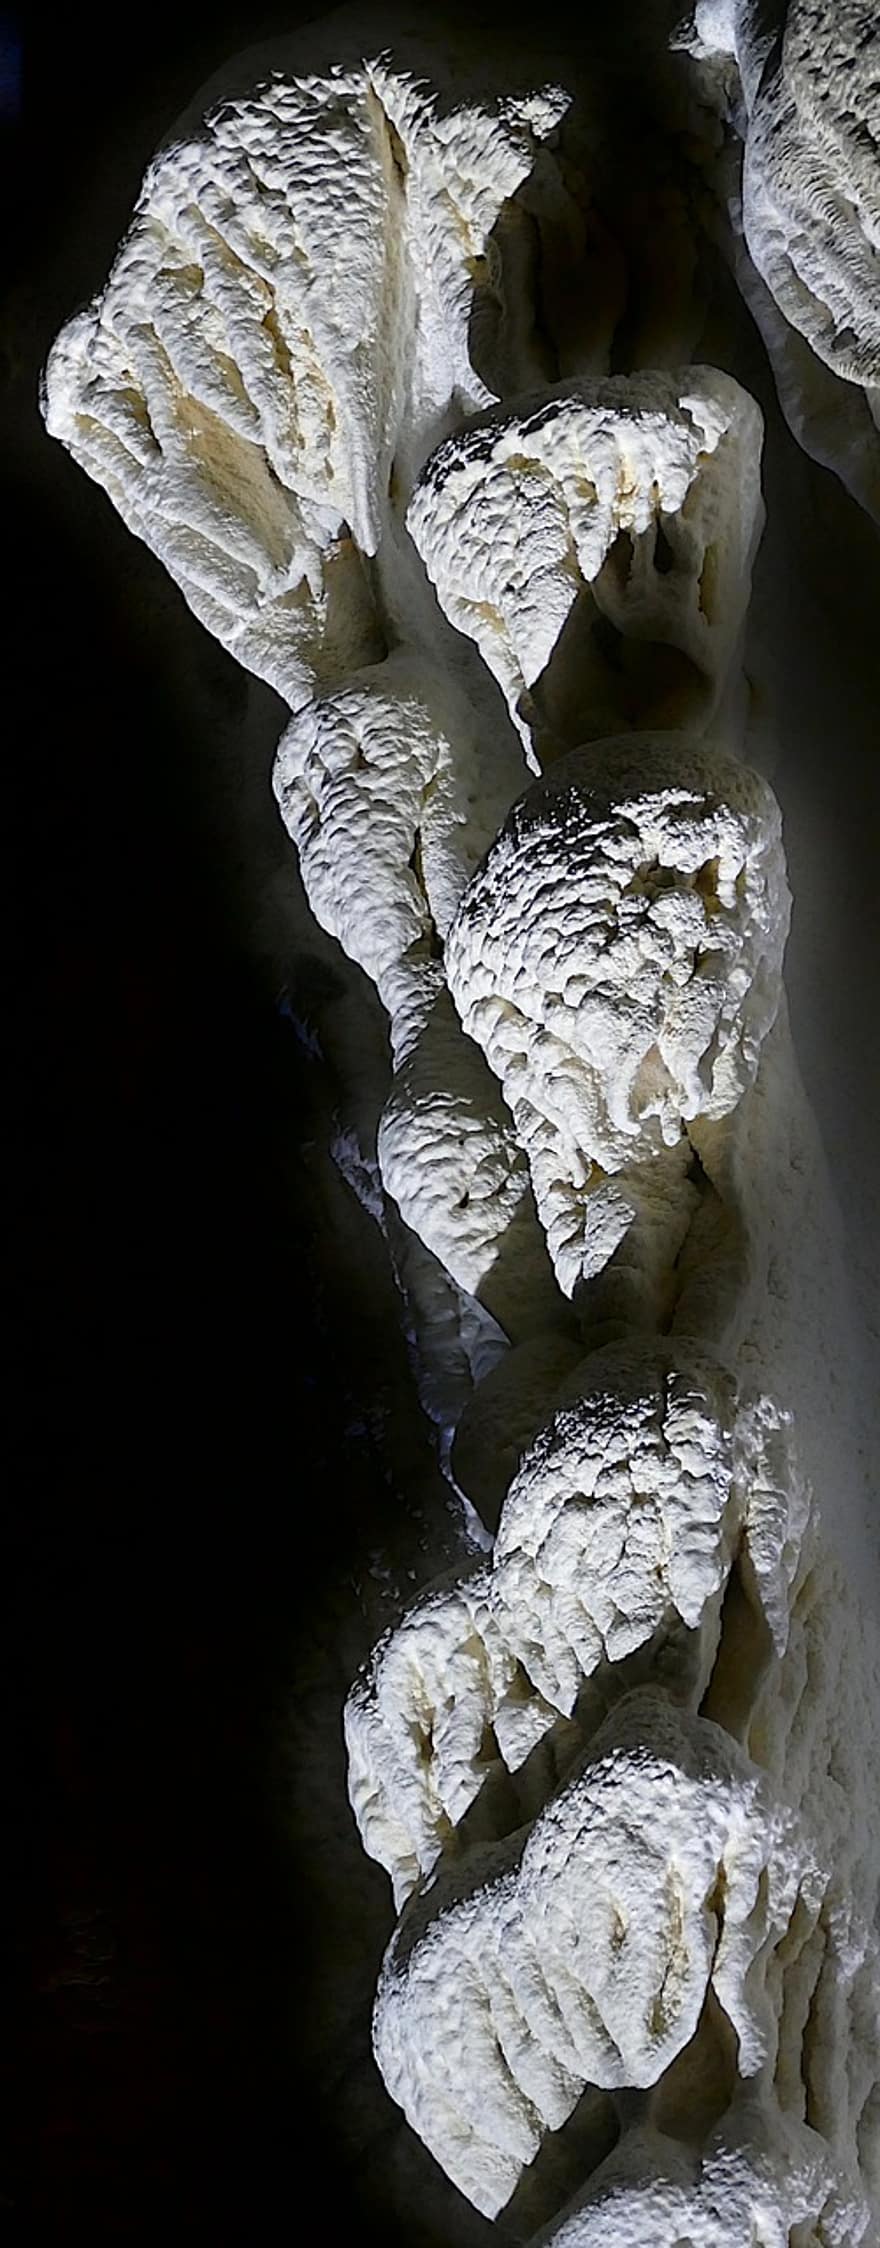 หินย้อย, ถ้ำ, ถ้ำหินย้อย, Hermannshöhle, ออสเตรีย, ออสเตรียล่าง, Kirchberg On The Change, ธรณีวิทยา, มืด, นรก